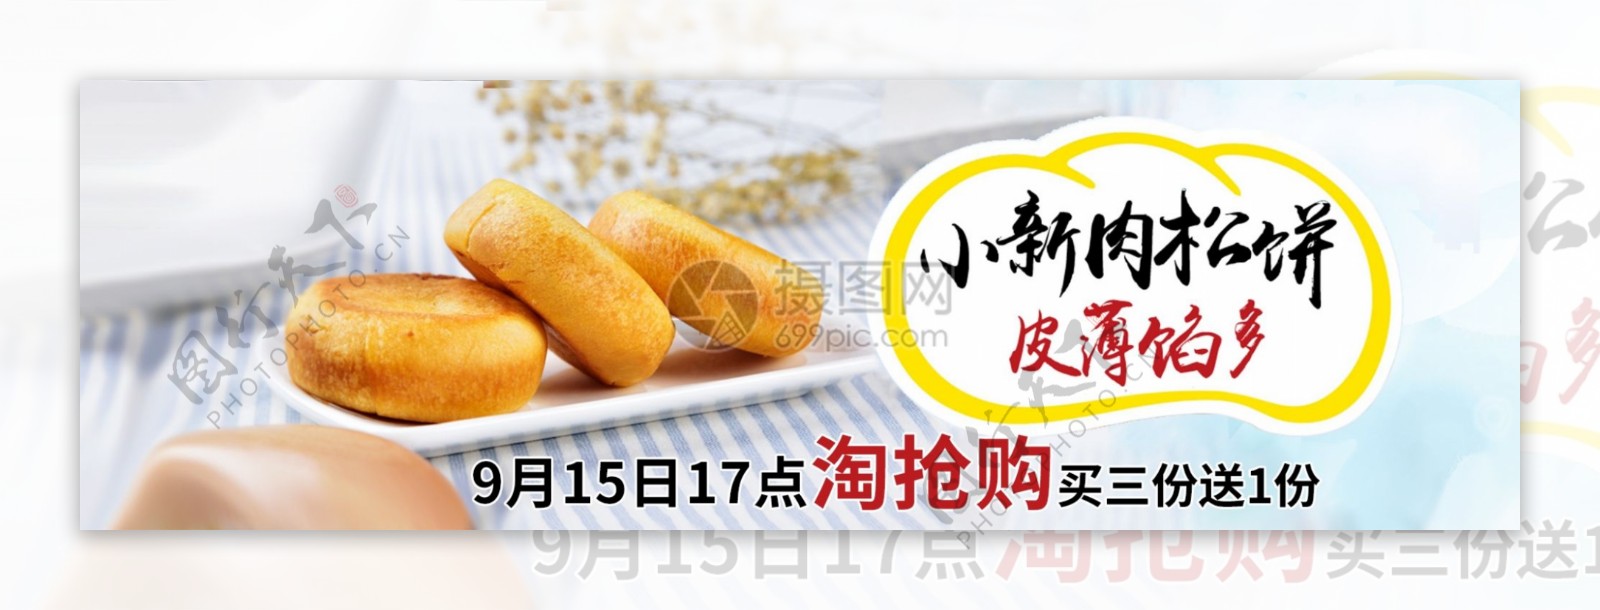 美食肉松饼淘宝banner